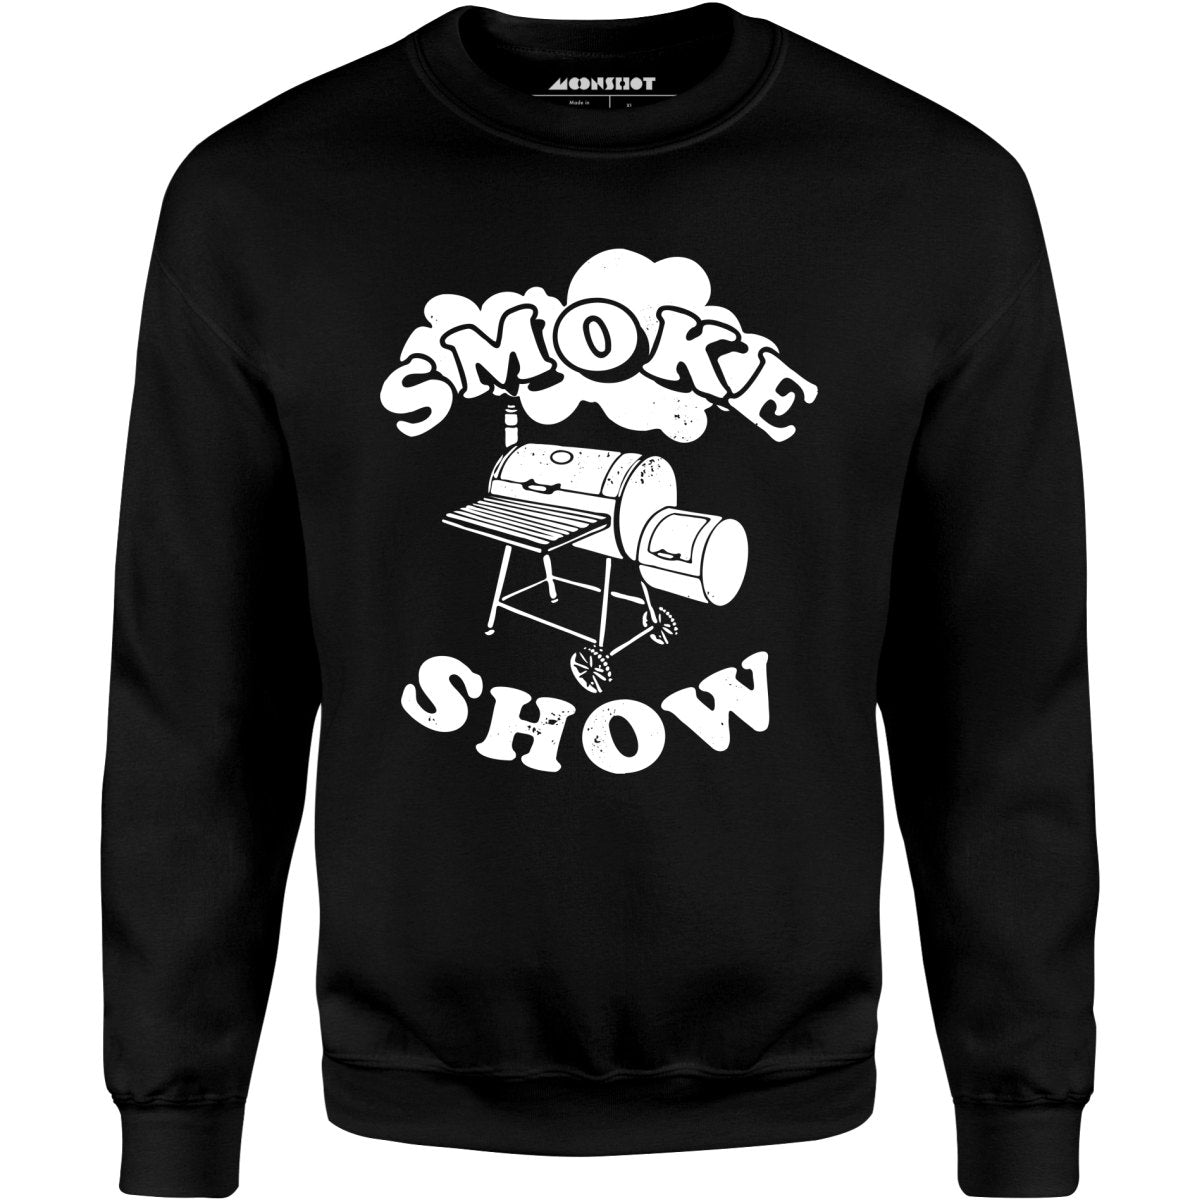 Smoke Show - Unisex Sweatshirt